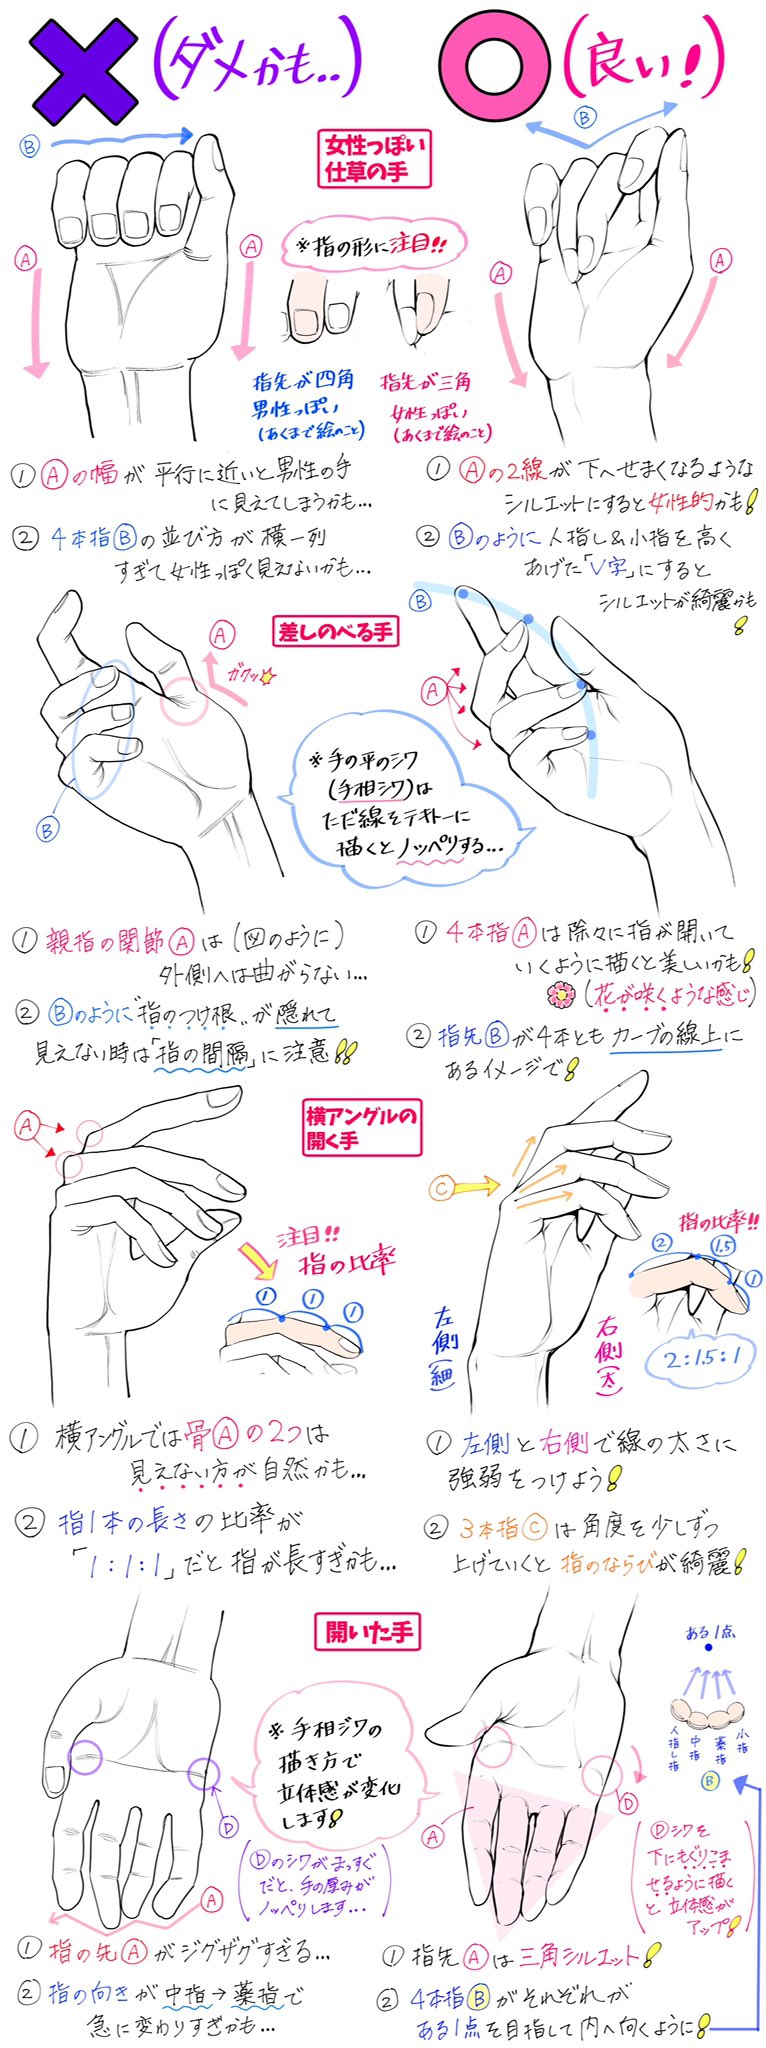 吉村拓也 イラスト講座 新作 いろんな手の描き方 初心者の頃に上達しておくといい 手のアングルをつめこんだ4ページ ダメかも と 良いかも